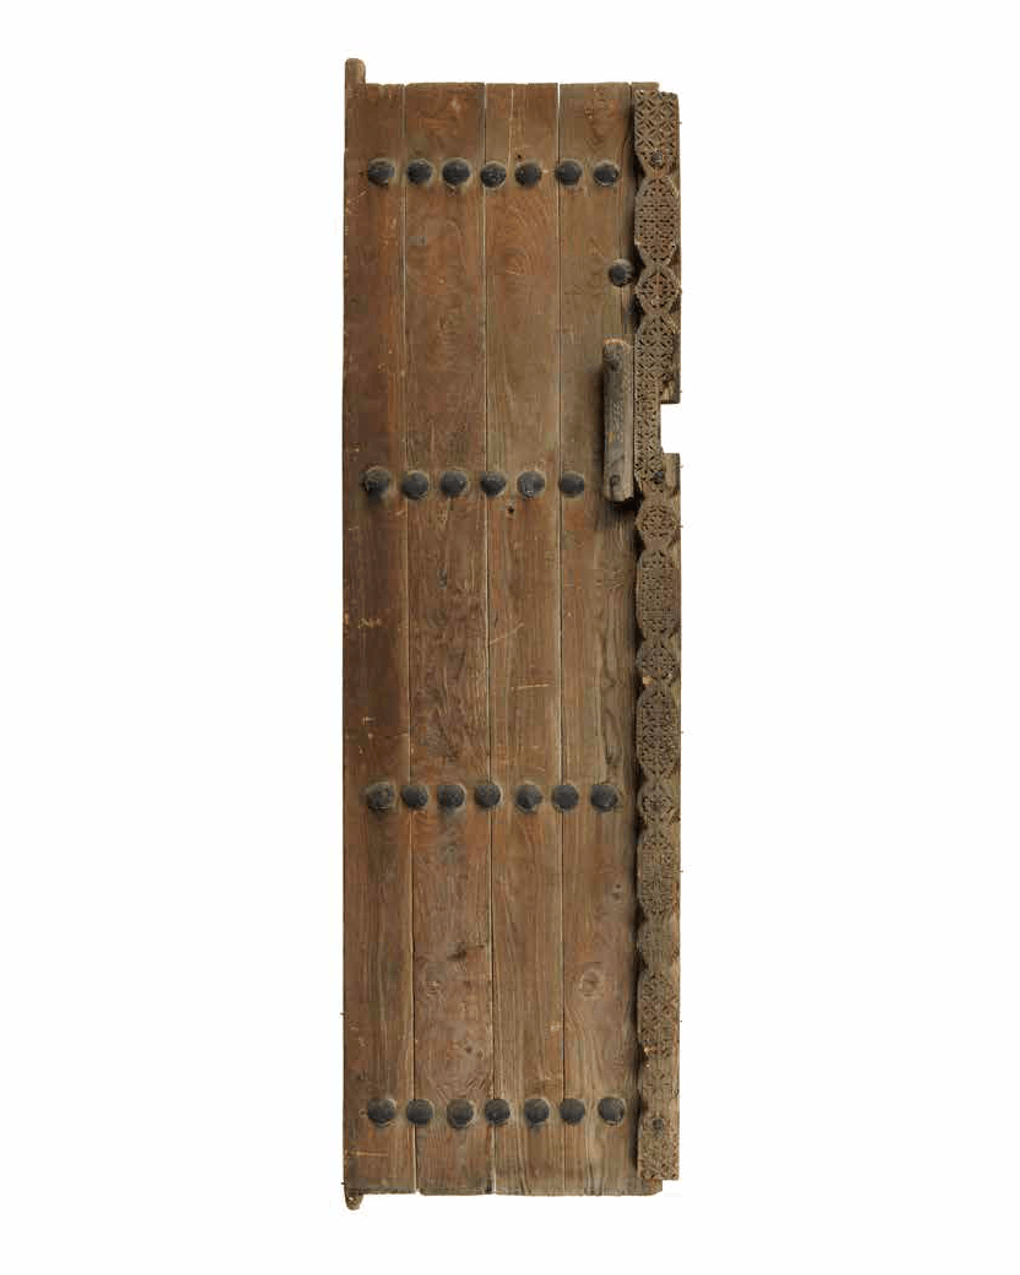 Традиционная дверь (левая створка). XX век. Фотография предоставлена Музеем шейха Фейсала, Катар